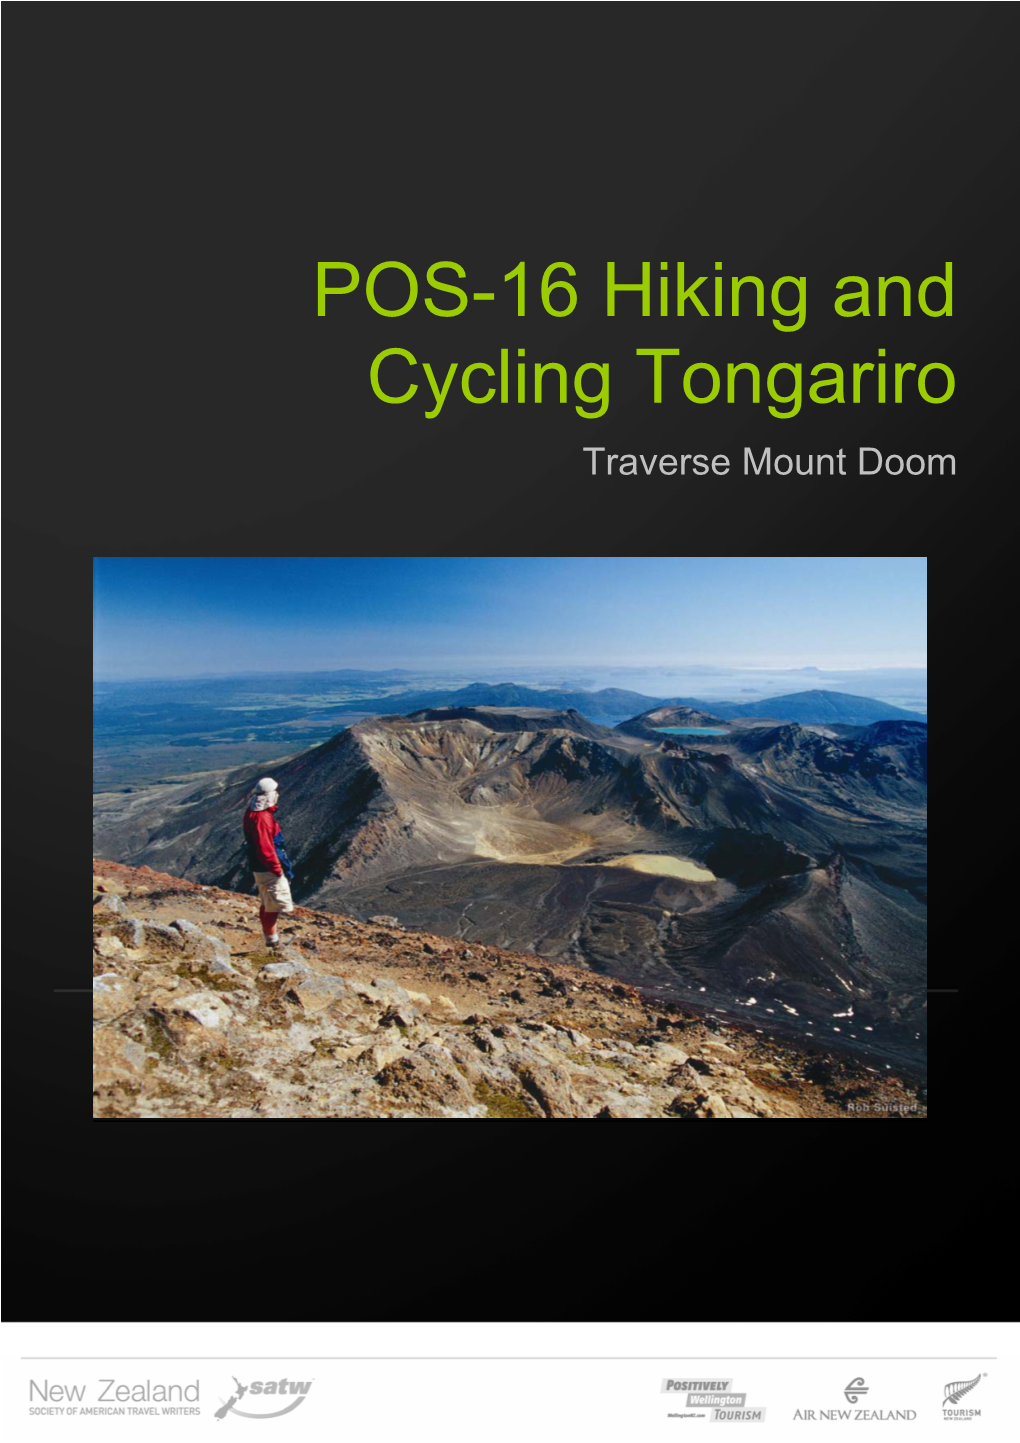 POS-16 Hiking and Cycling Tongariro